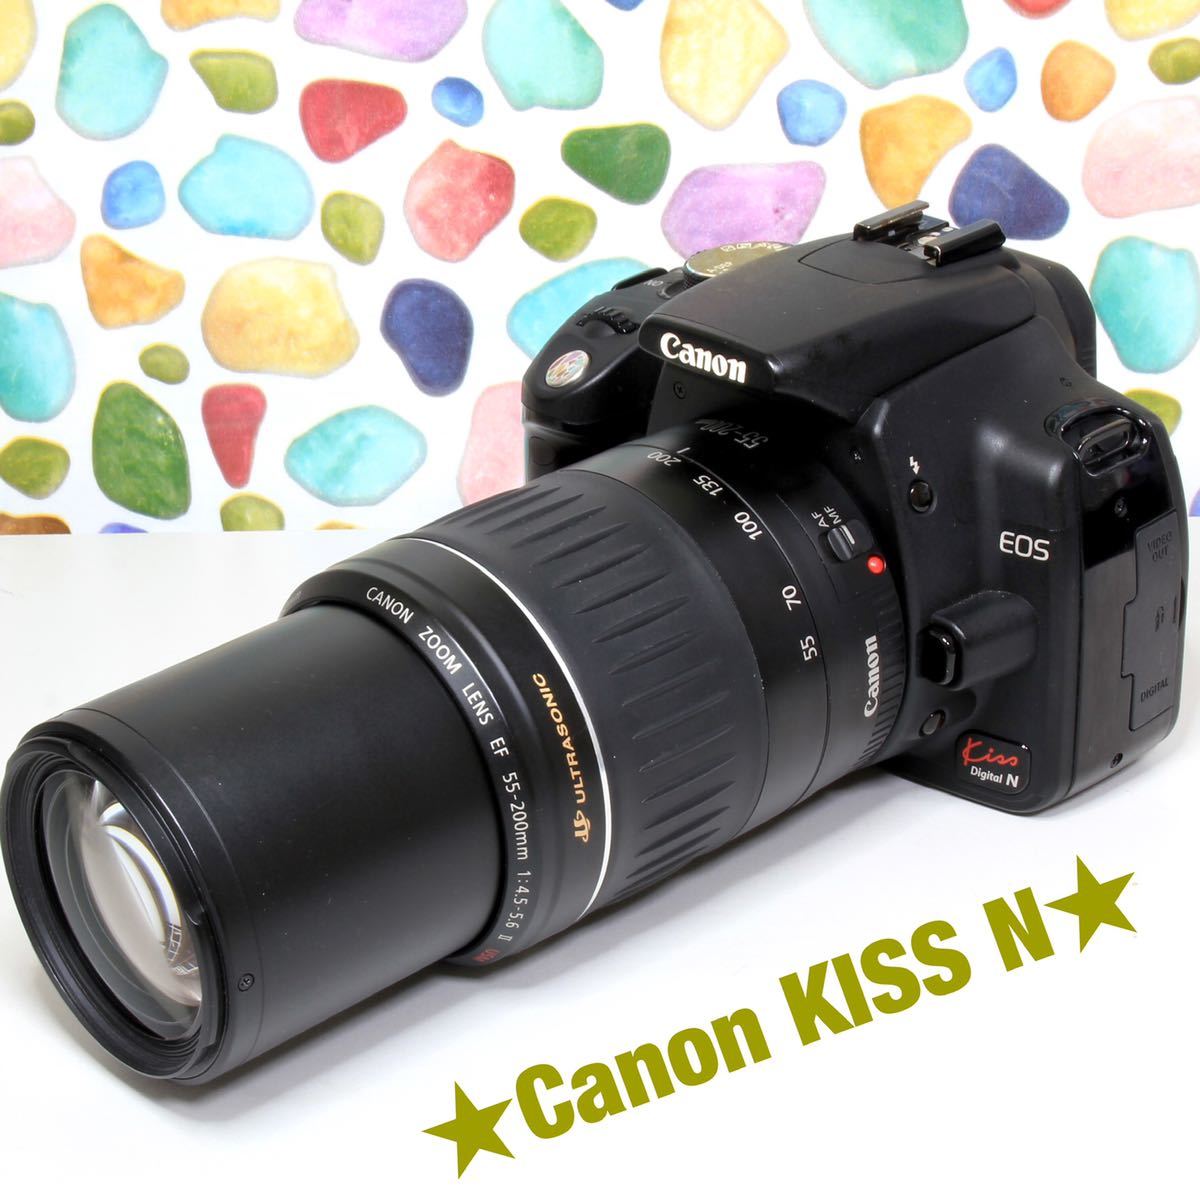 大人気商品 ★付属品多数★Canon ダブルレンズキット X7 Kiss EOS デジタルカメラ